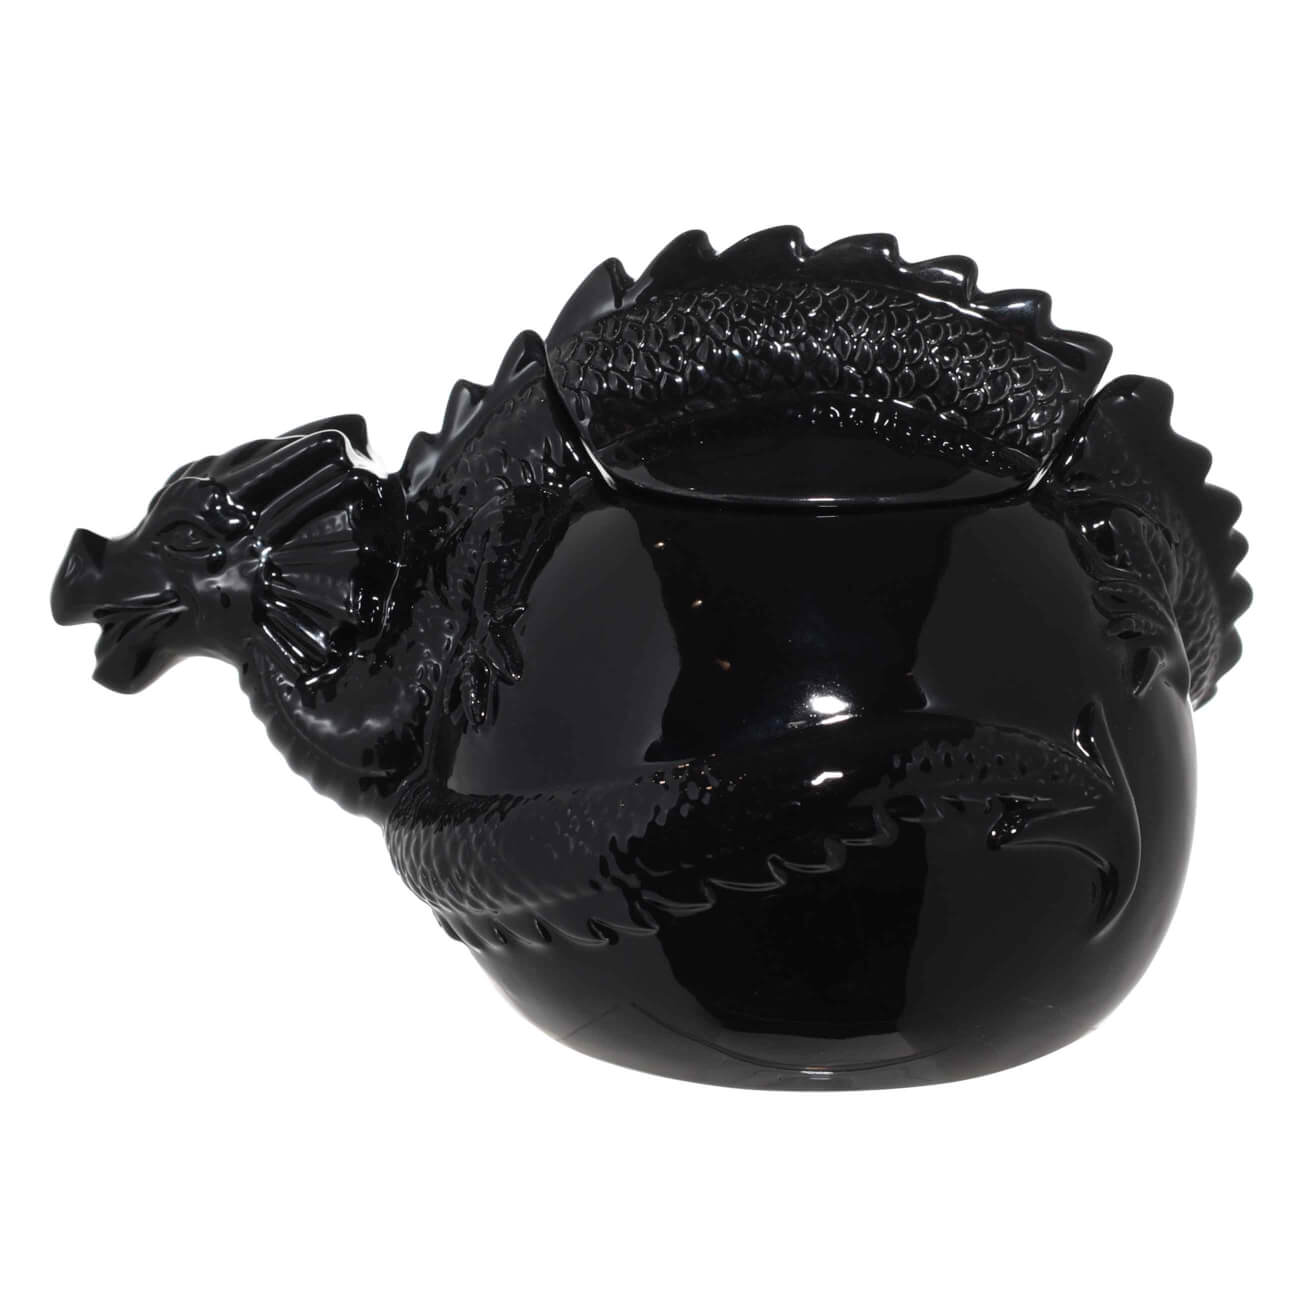 Емкость для хранения, 22х14 см, керамика, черная, Дракон, Dragon dayron изображение № 1